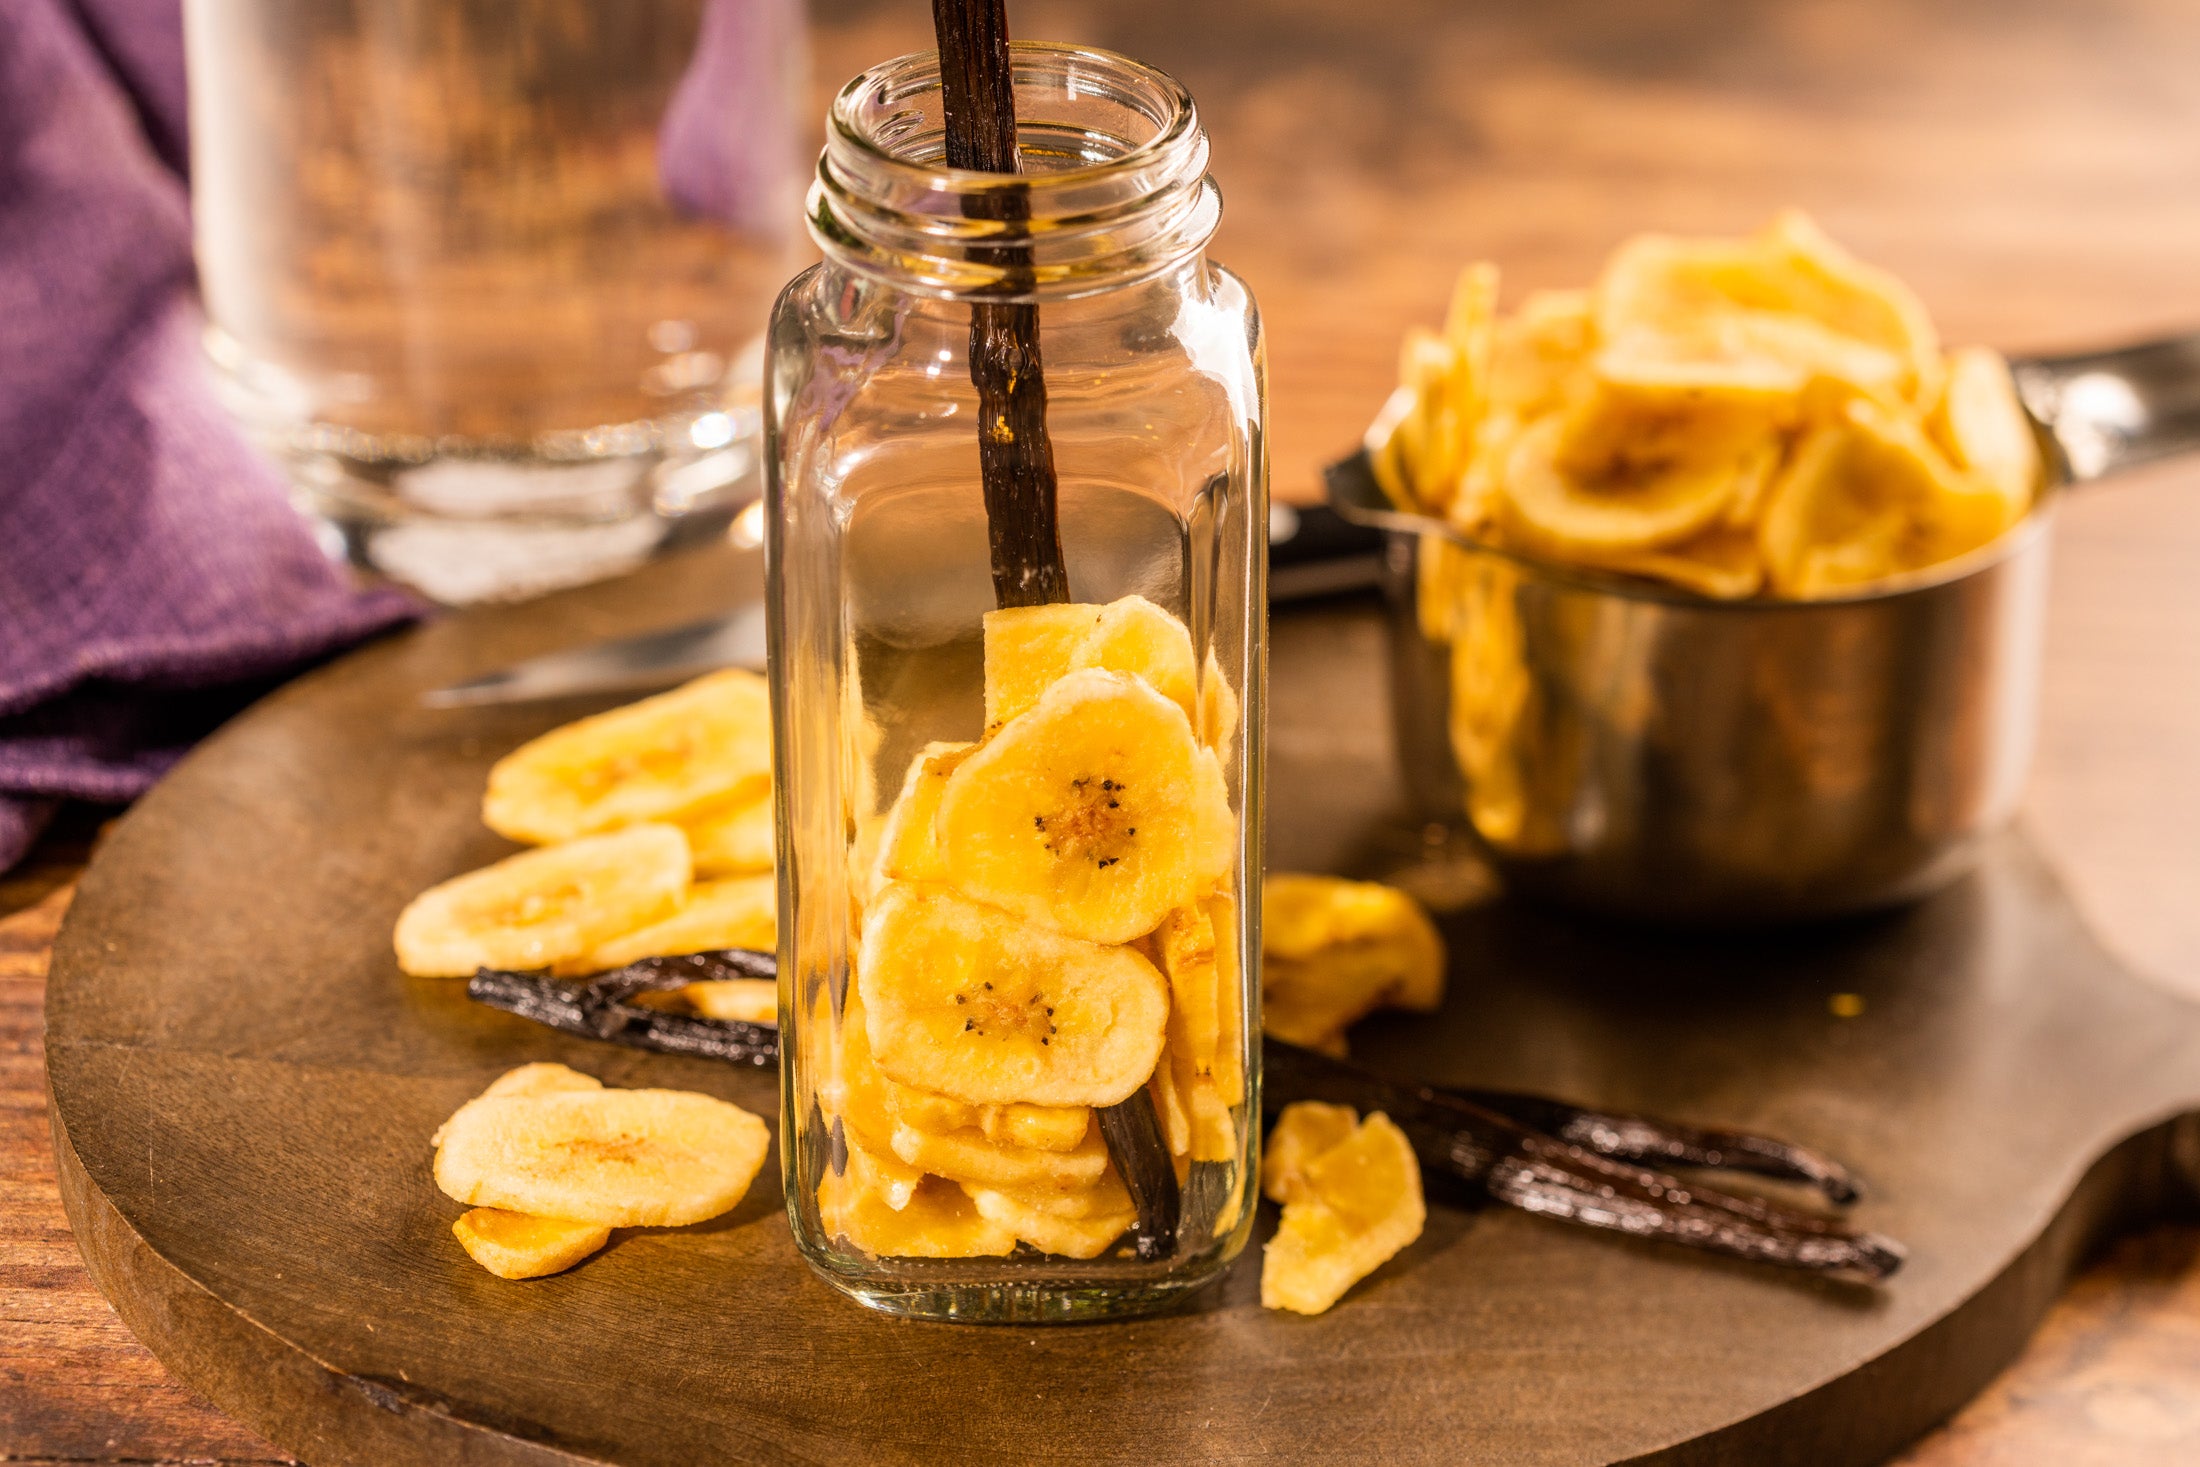 Banana & Vanilla Extract from The Art of Extract Making